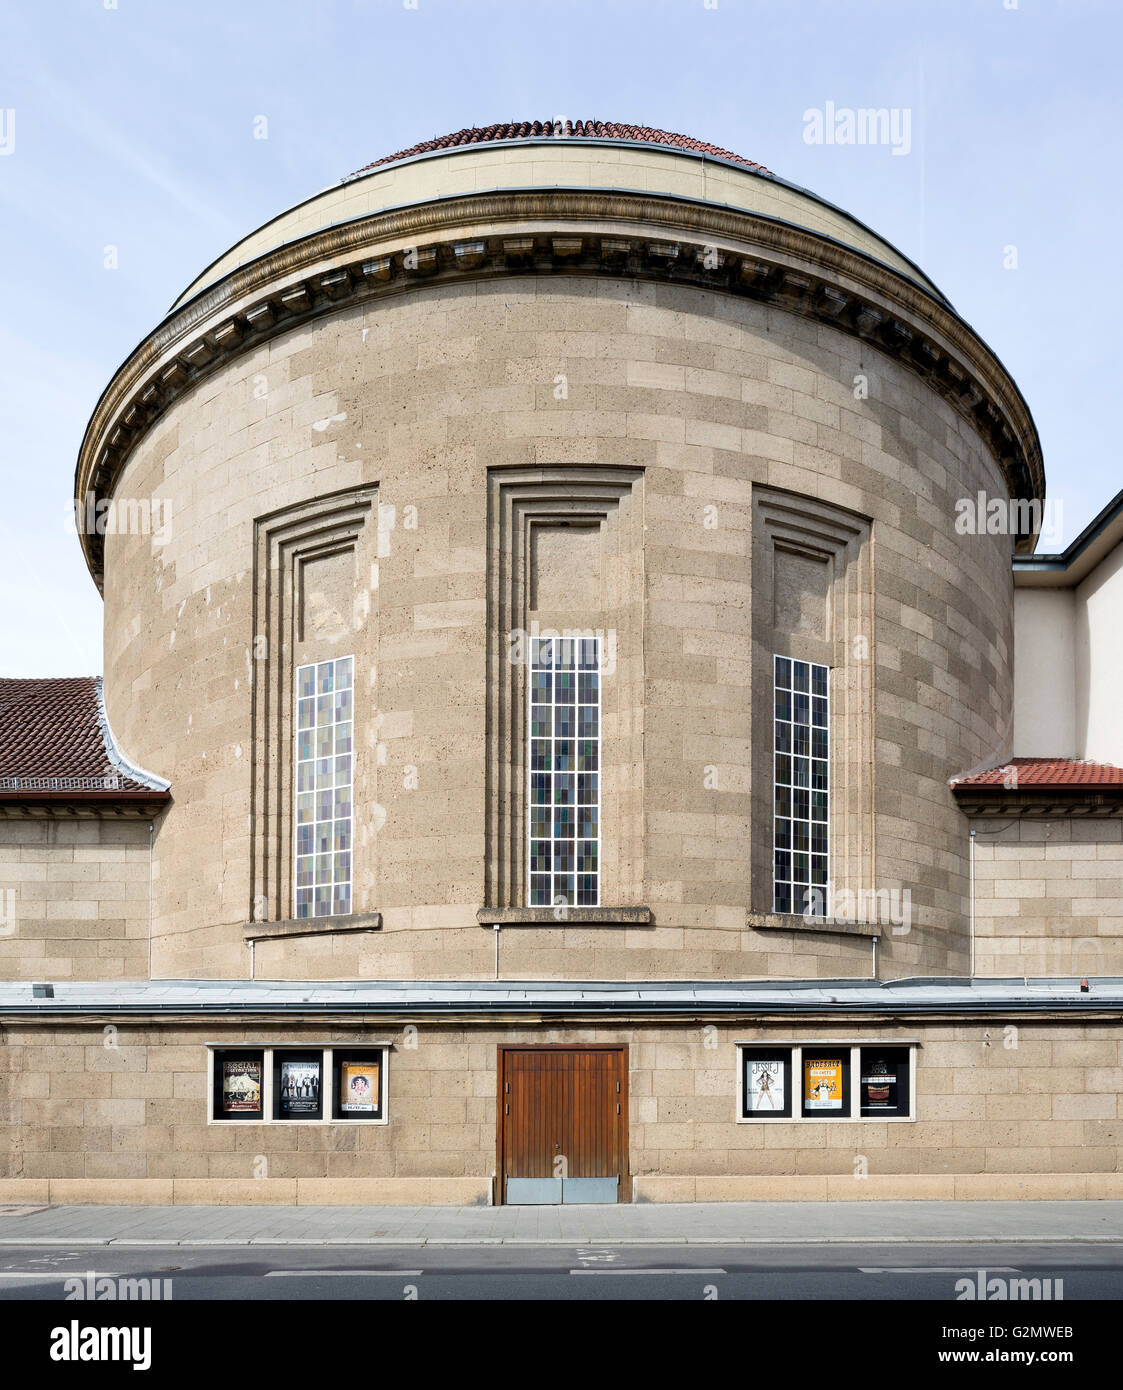 Ehemalige Synagoge der jüdischen Gemeinde von Offenbach im Jahr 1916, heute Theater, Offenbach am Main, Hessen, Deutschland Stockfoto